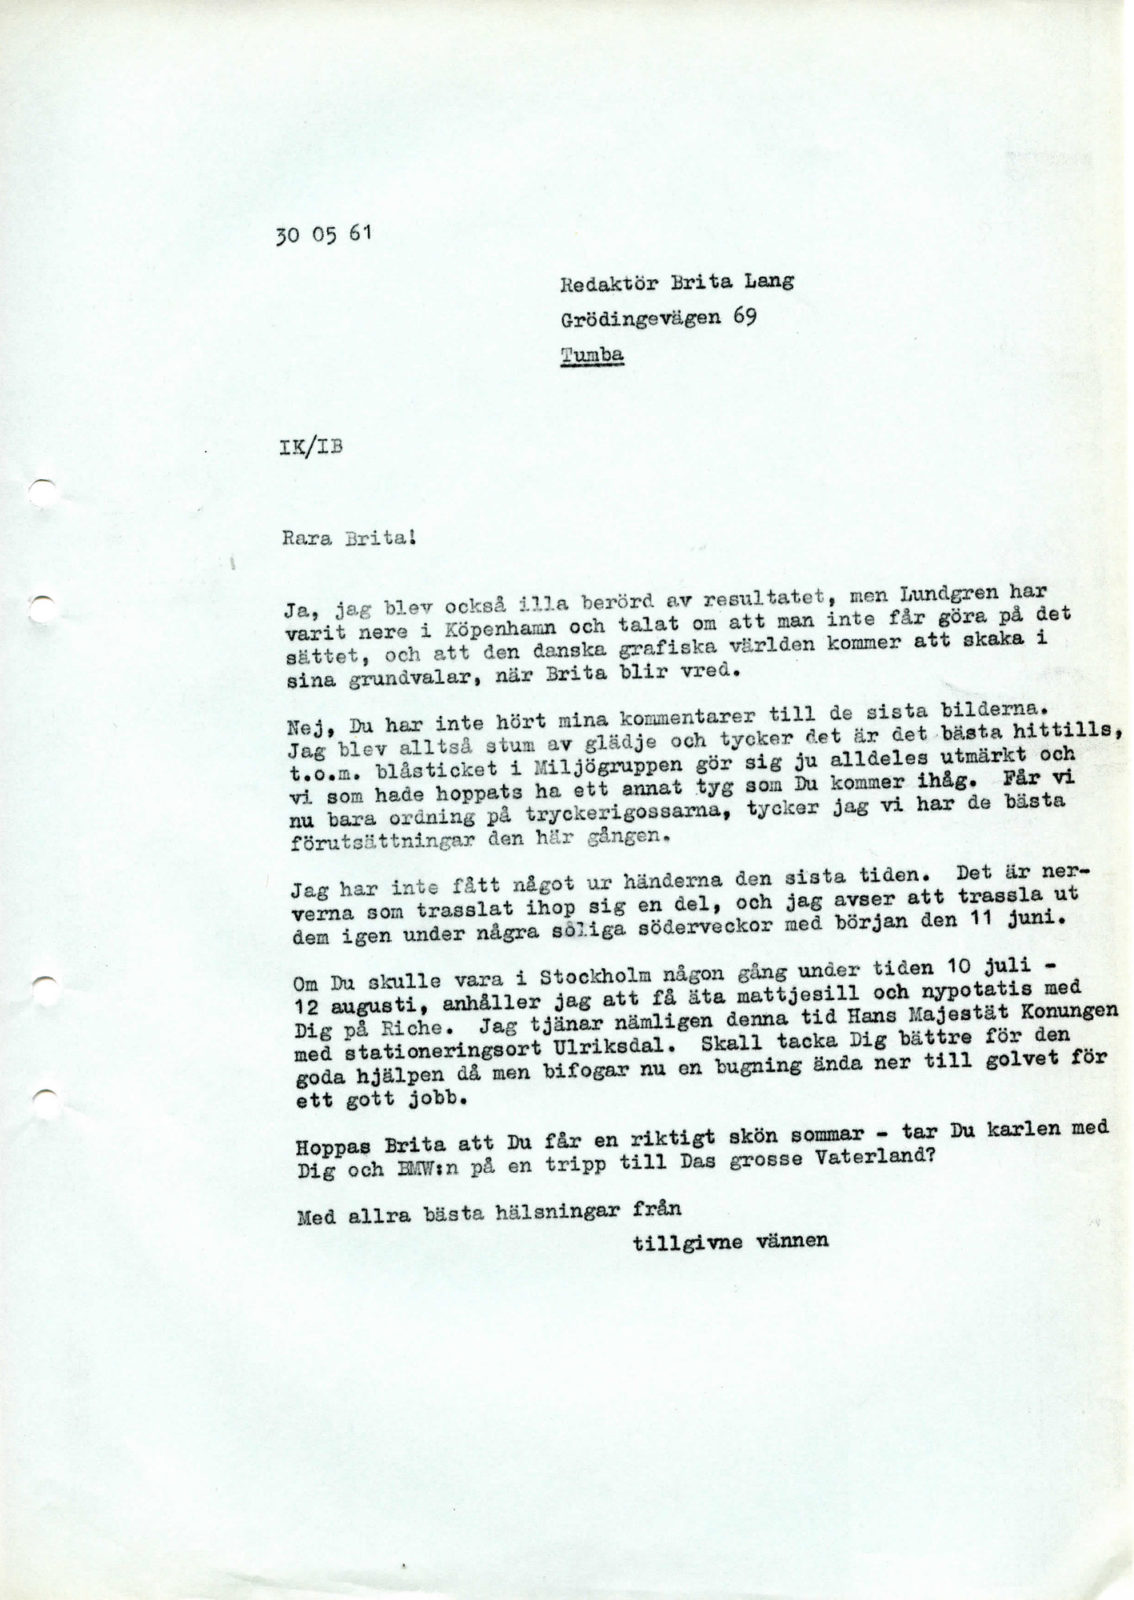 Typewritten letter from Ingvar Kamprad to Brita Lang, 30 May 1961.